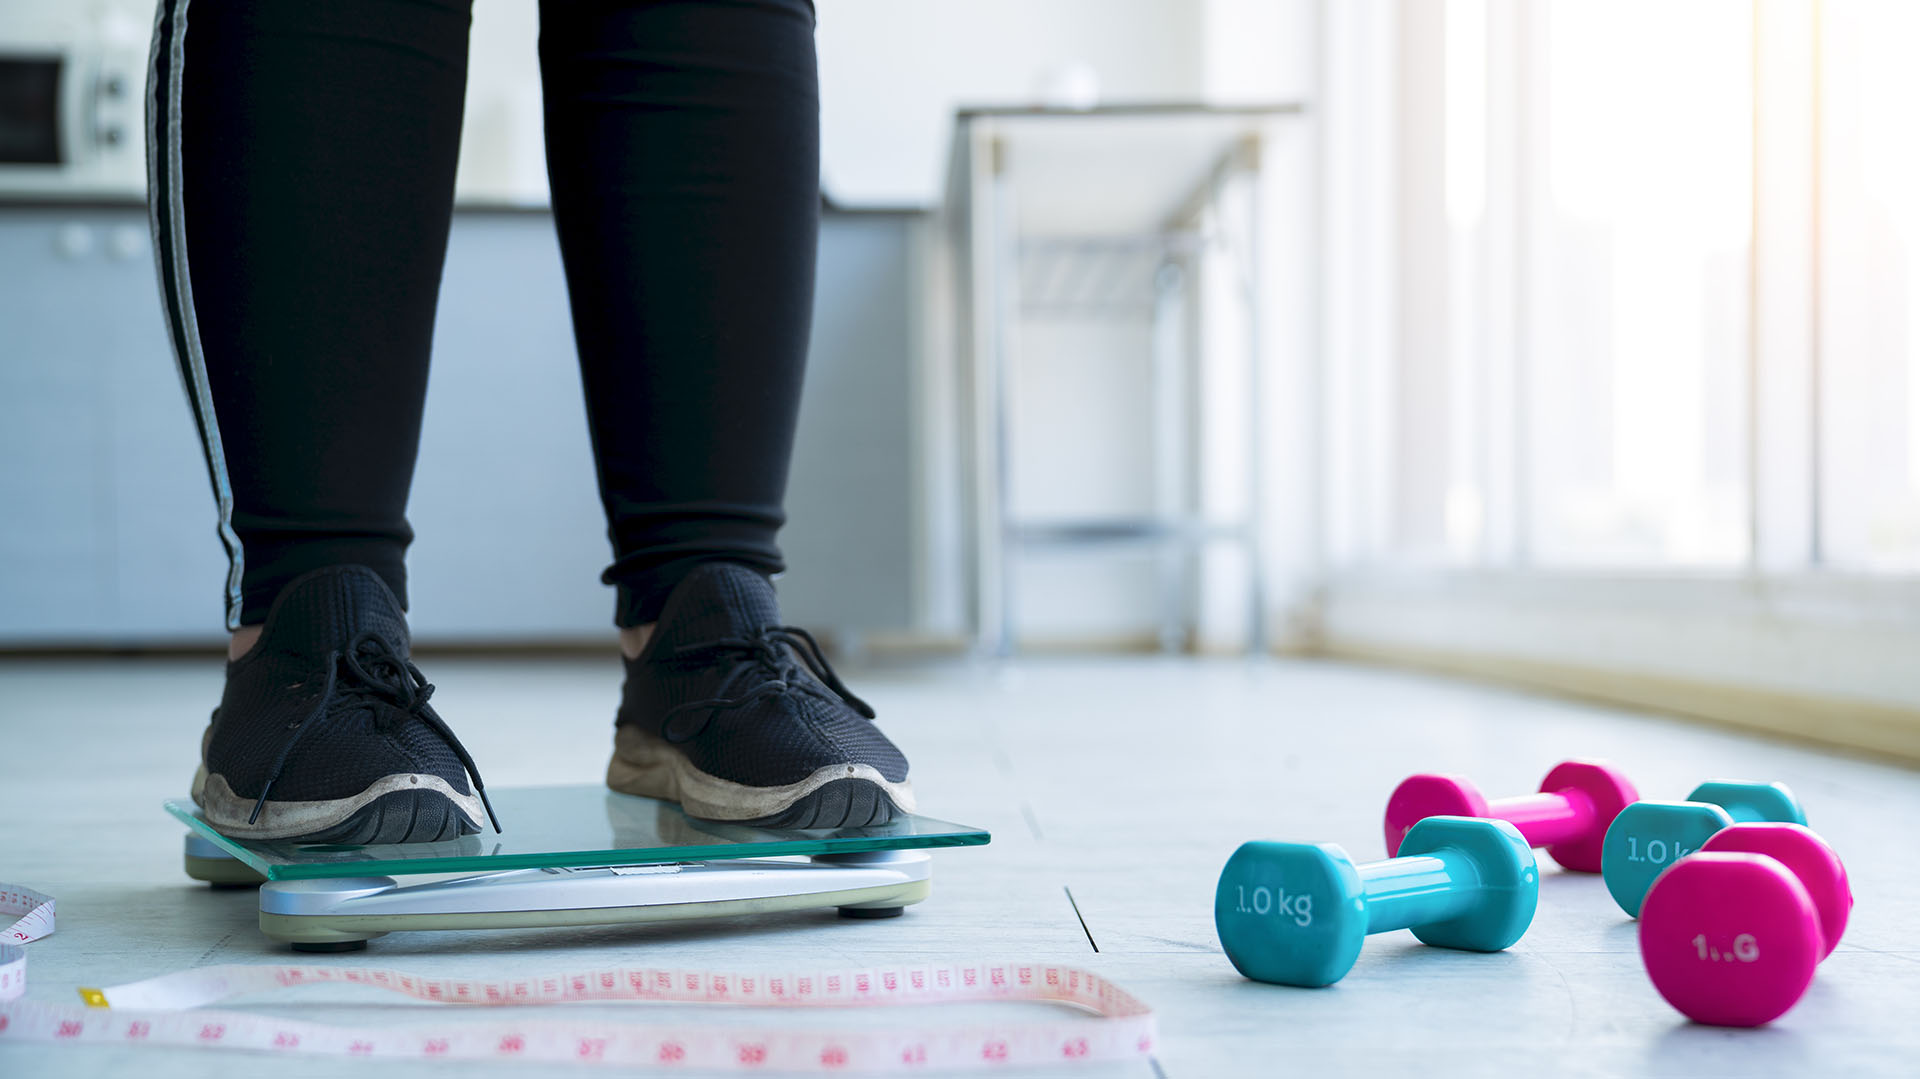 Según los expertos, era necesario que las personas que luchaban contra el peso tuvieran opciones más allá del ejercicio cardiovascular
(Getty Images)